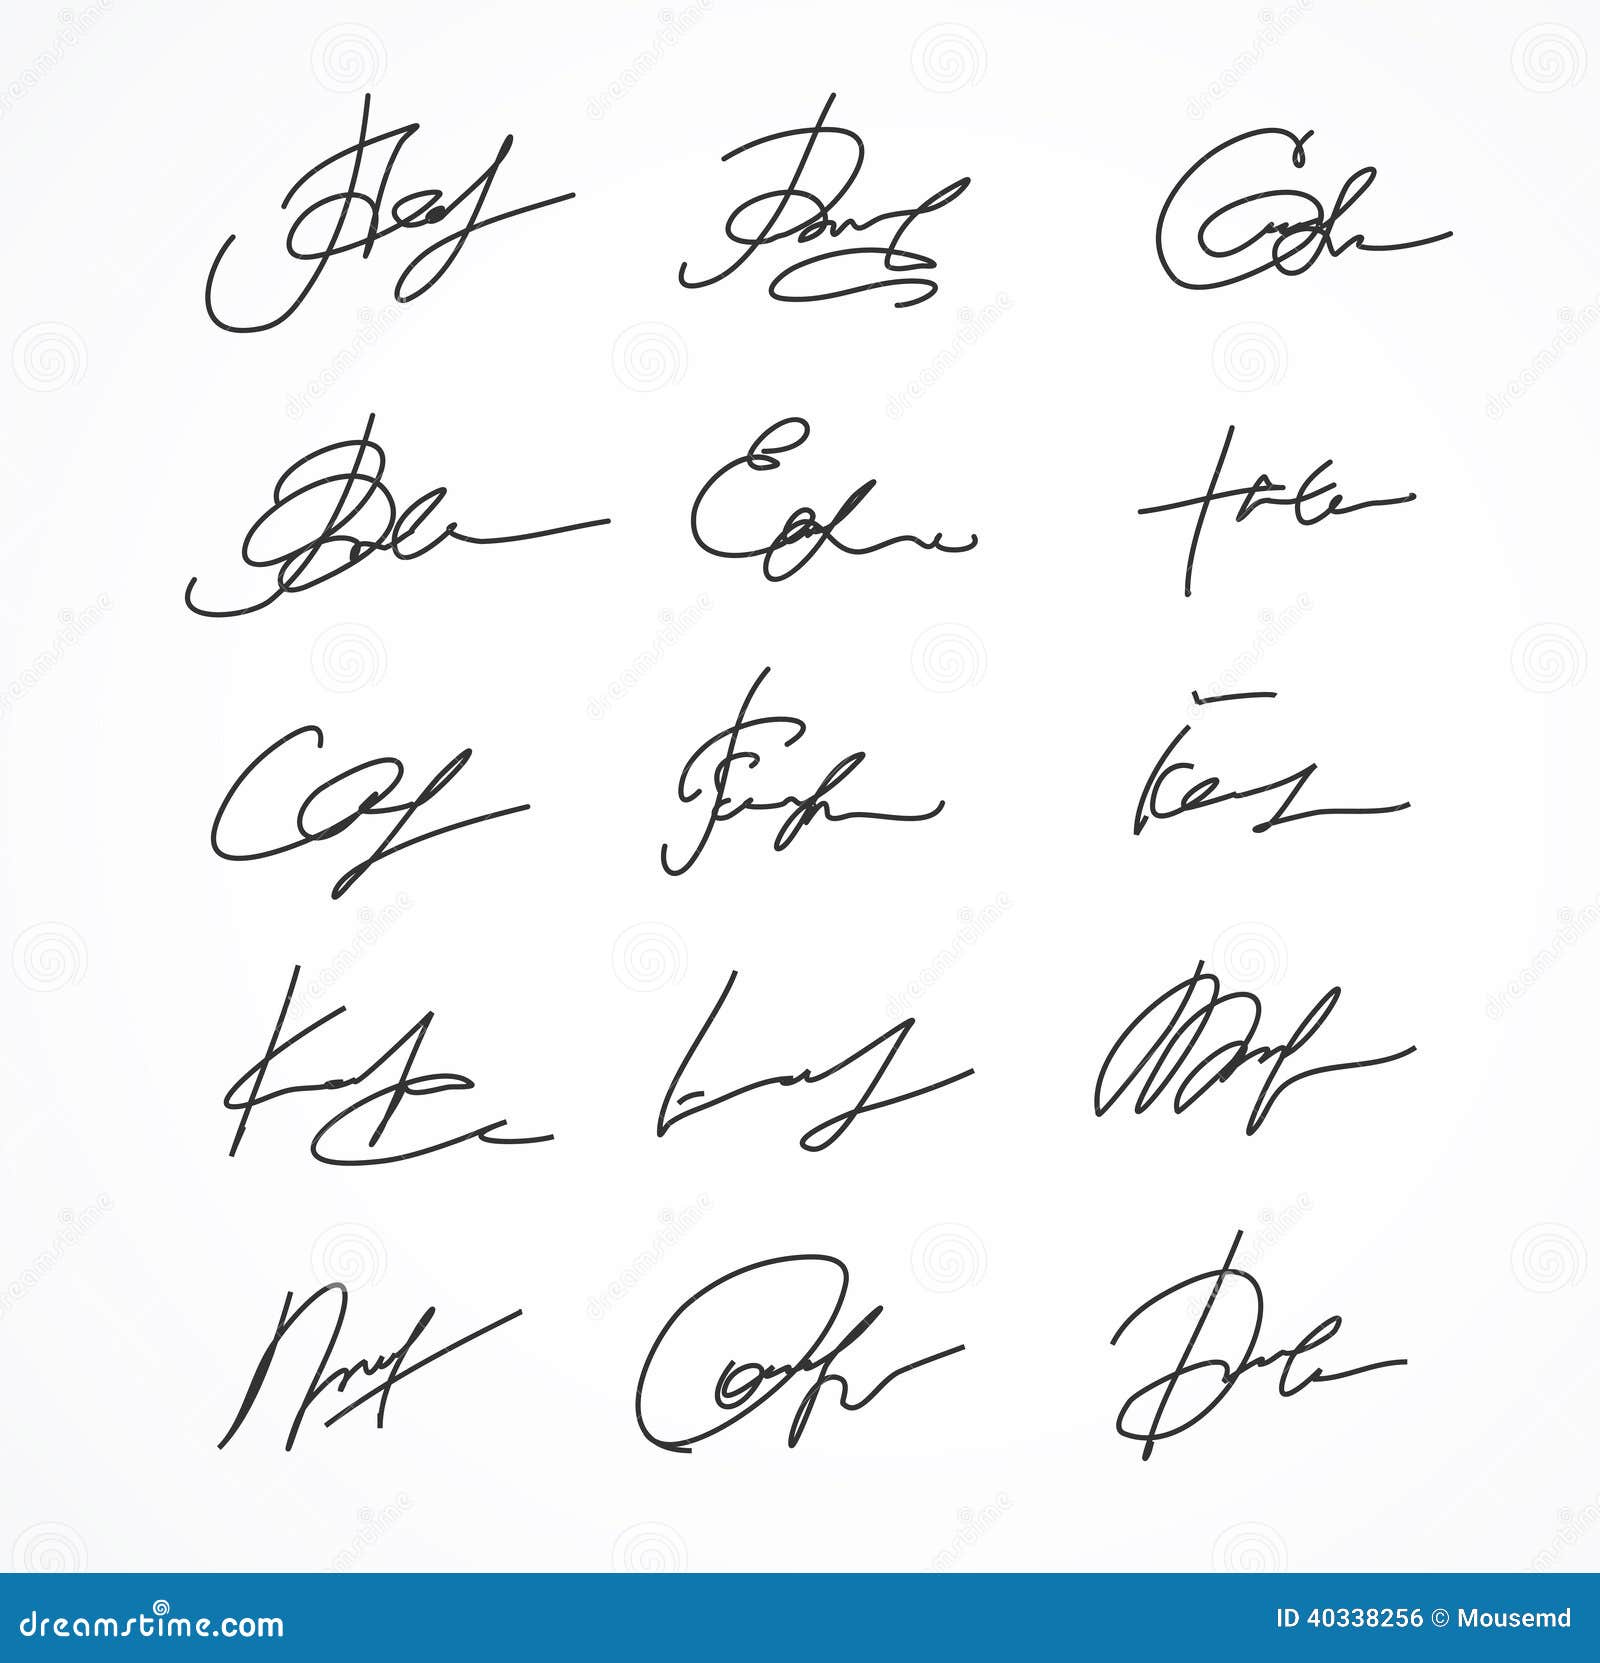  signature fictitious autograph